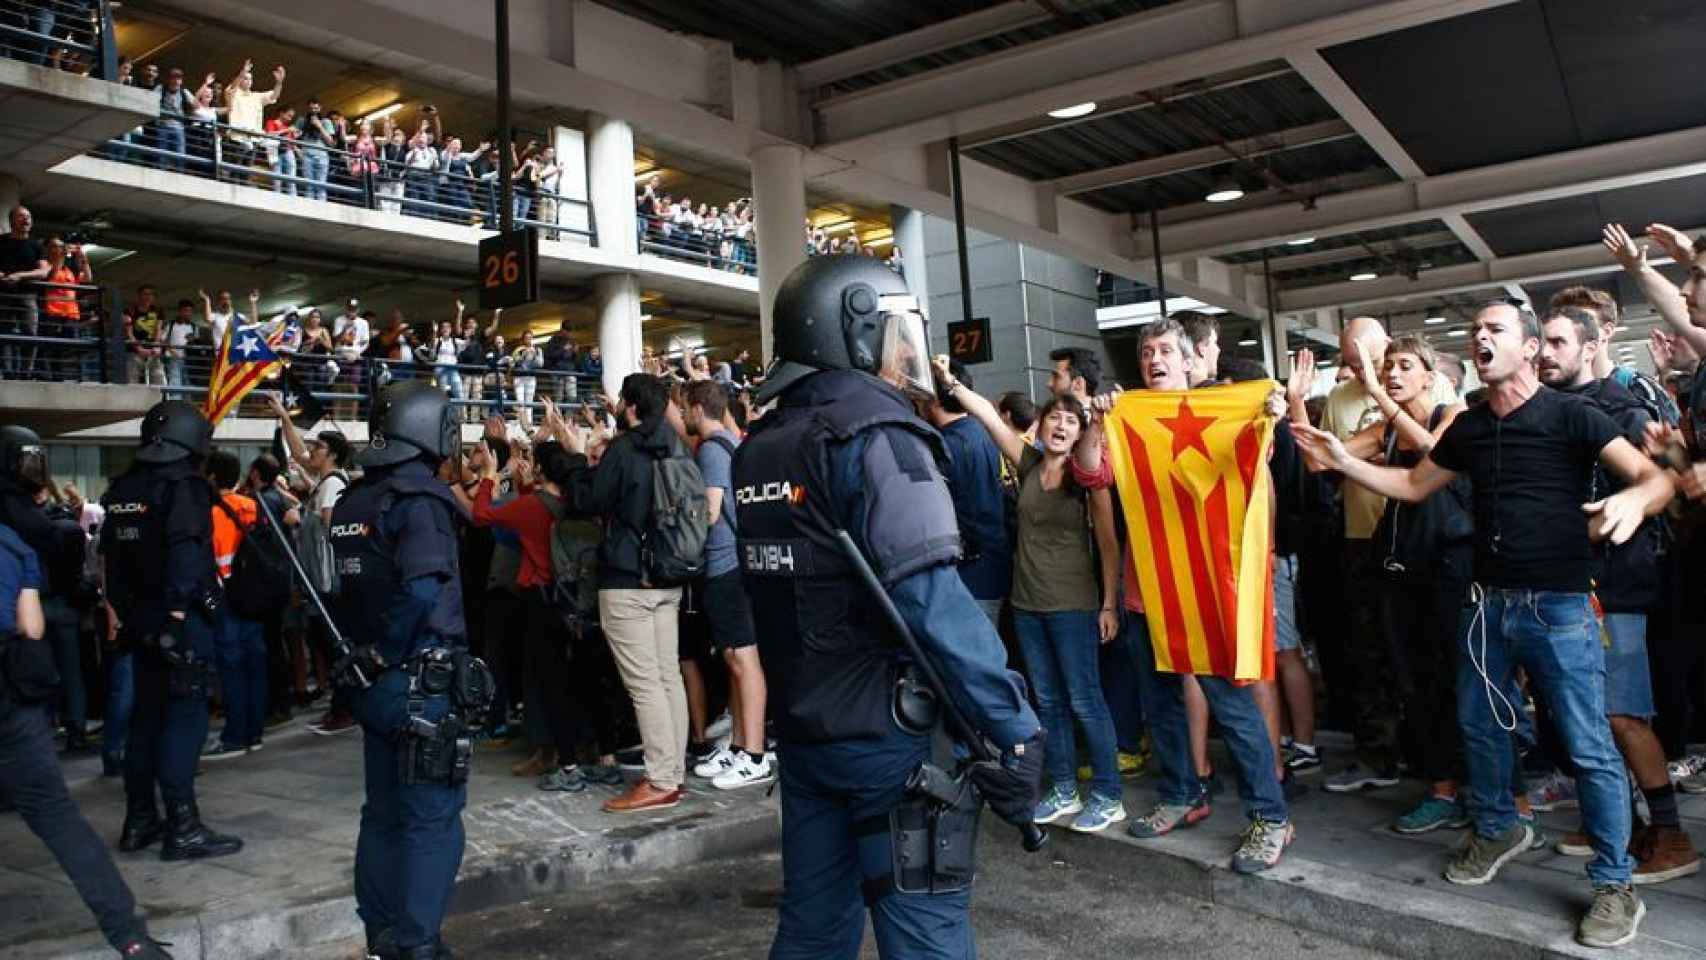 Los radicales de Tsunami Democràtic, durante el asalto al aeropuerto barcelonés.